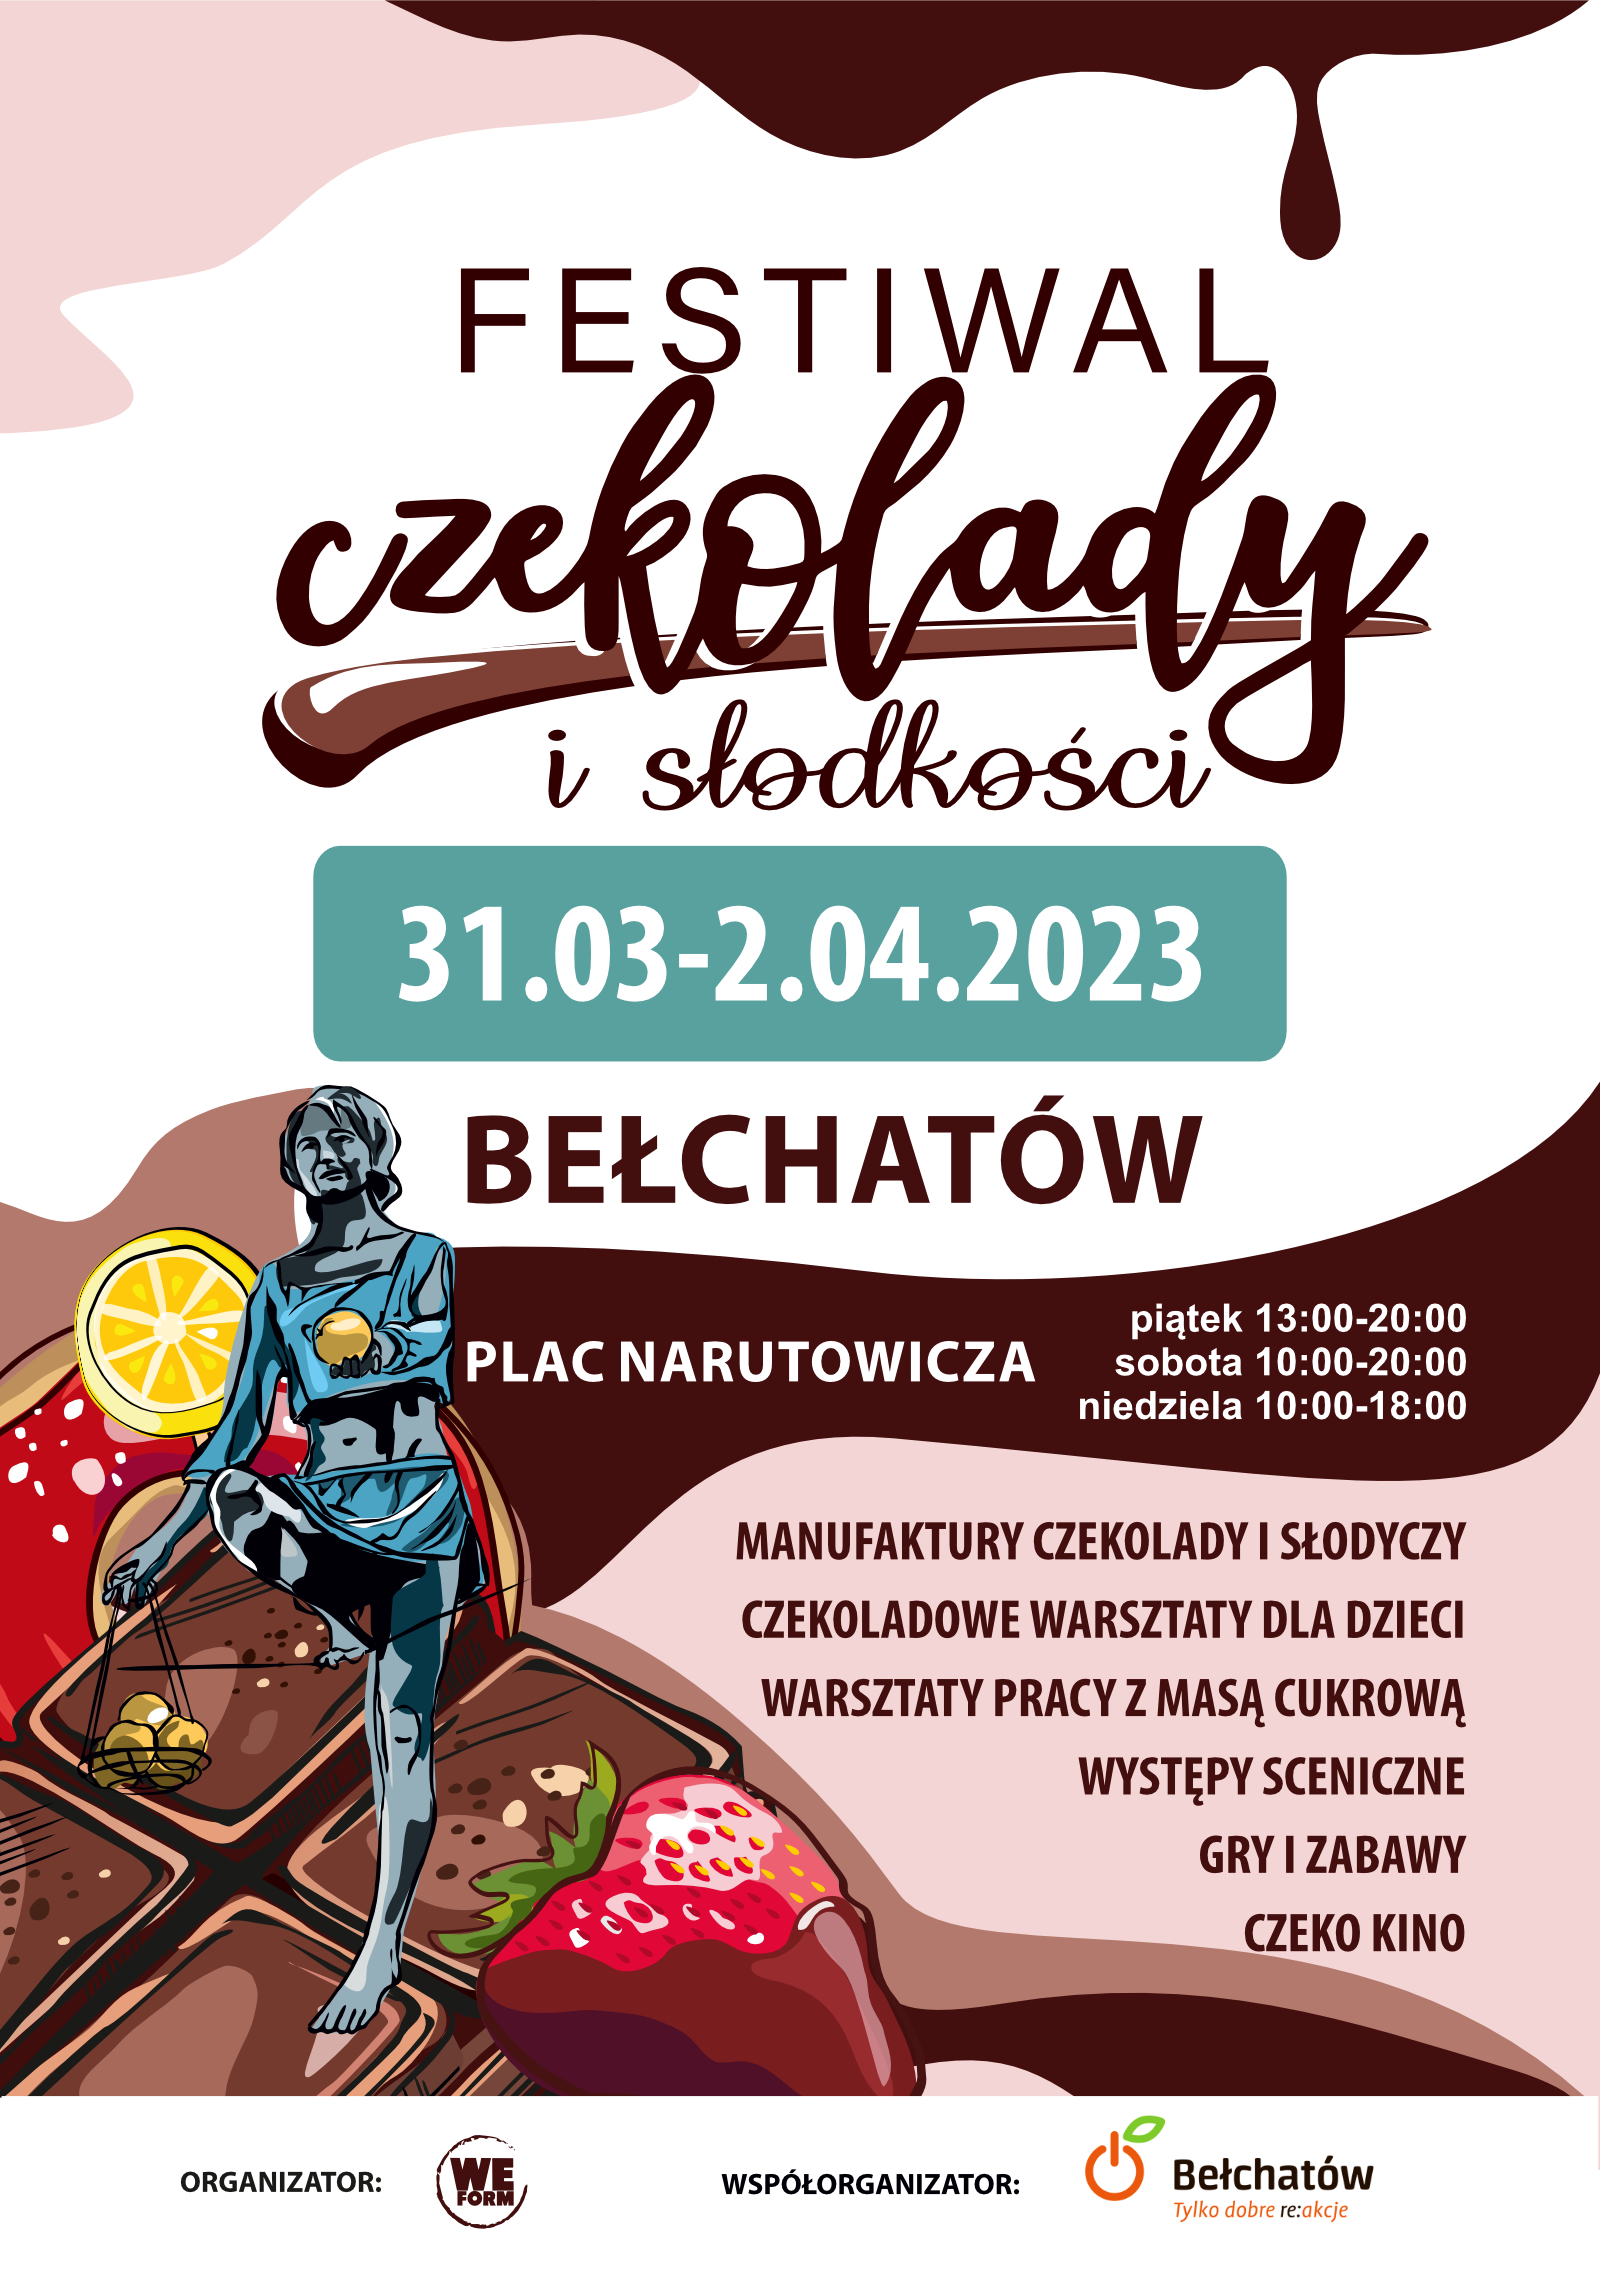 Plakat promujący Festiwal Czekolady i Słodkości w Bełchatowie 